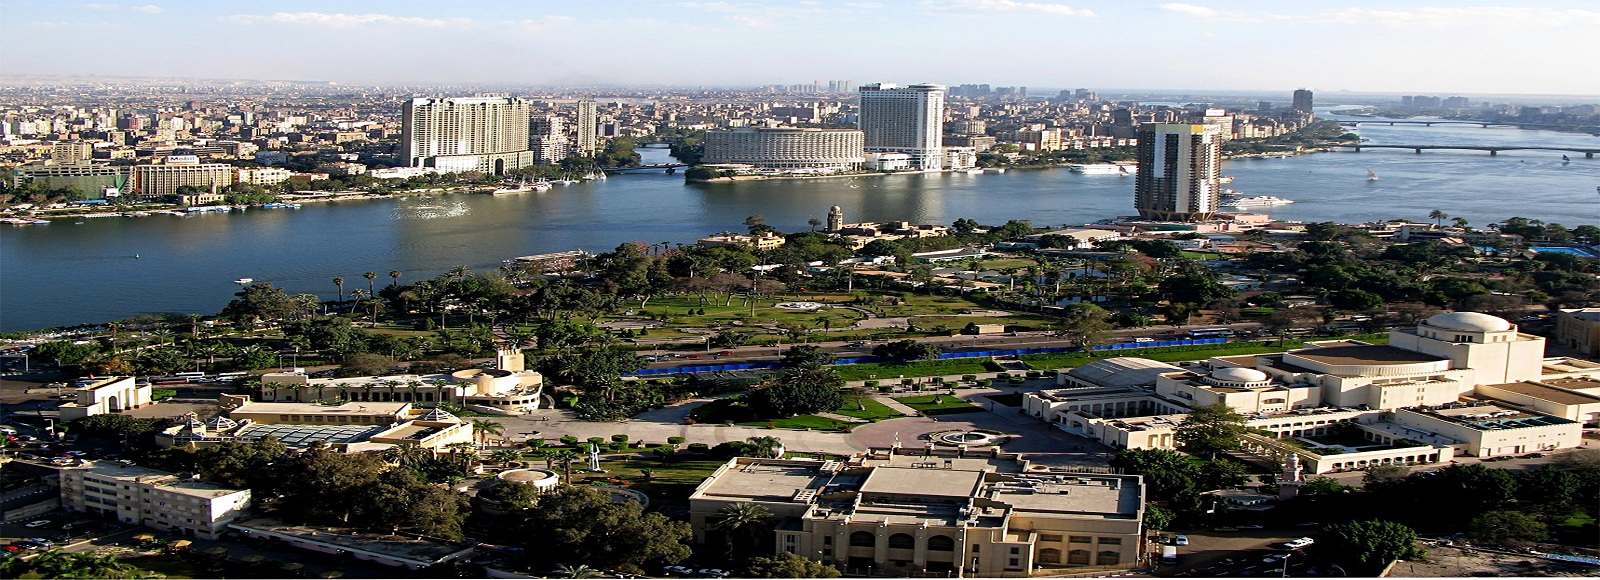 Ofertas de Traslados en El Cairo. Traslados económicos en El Cairo 